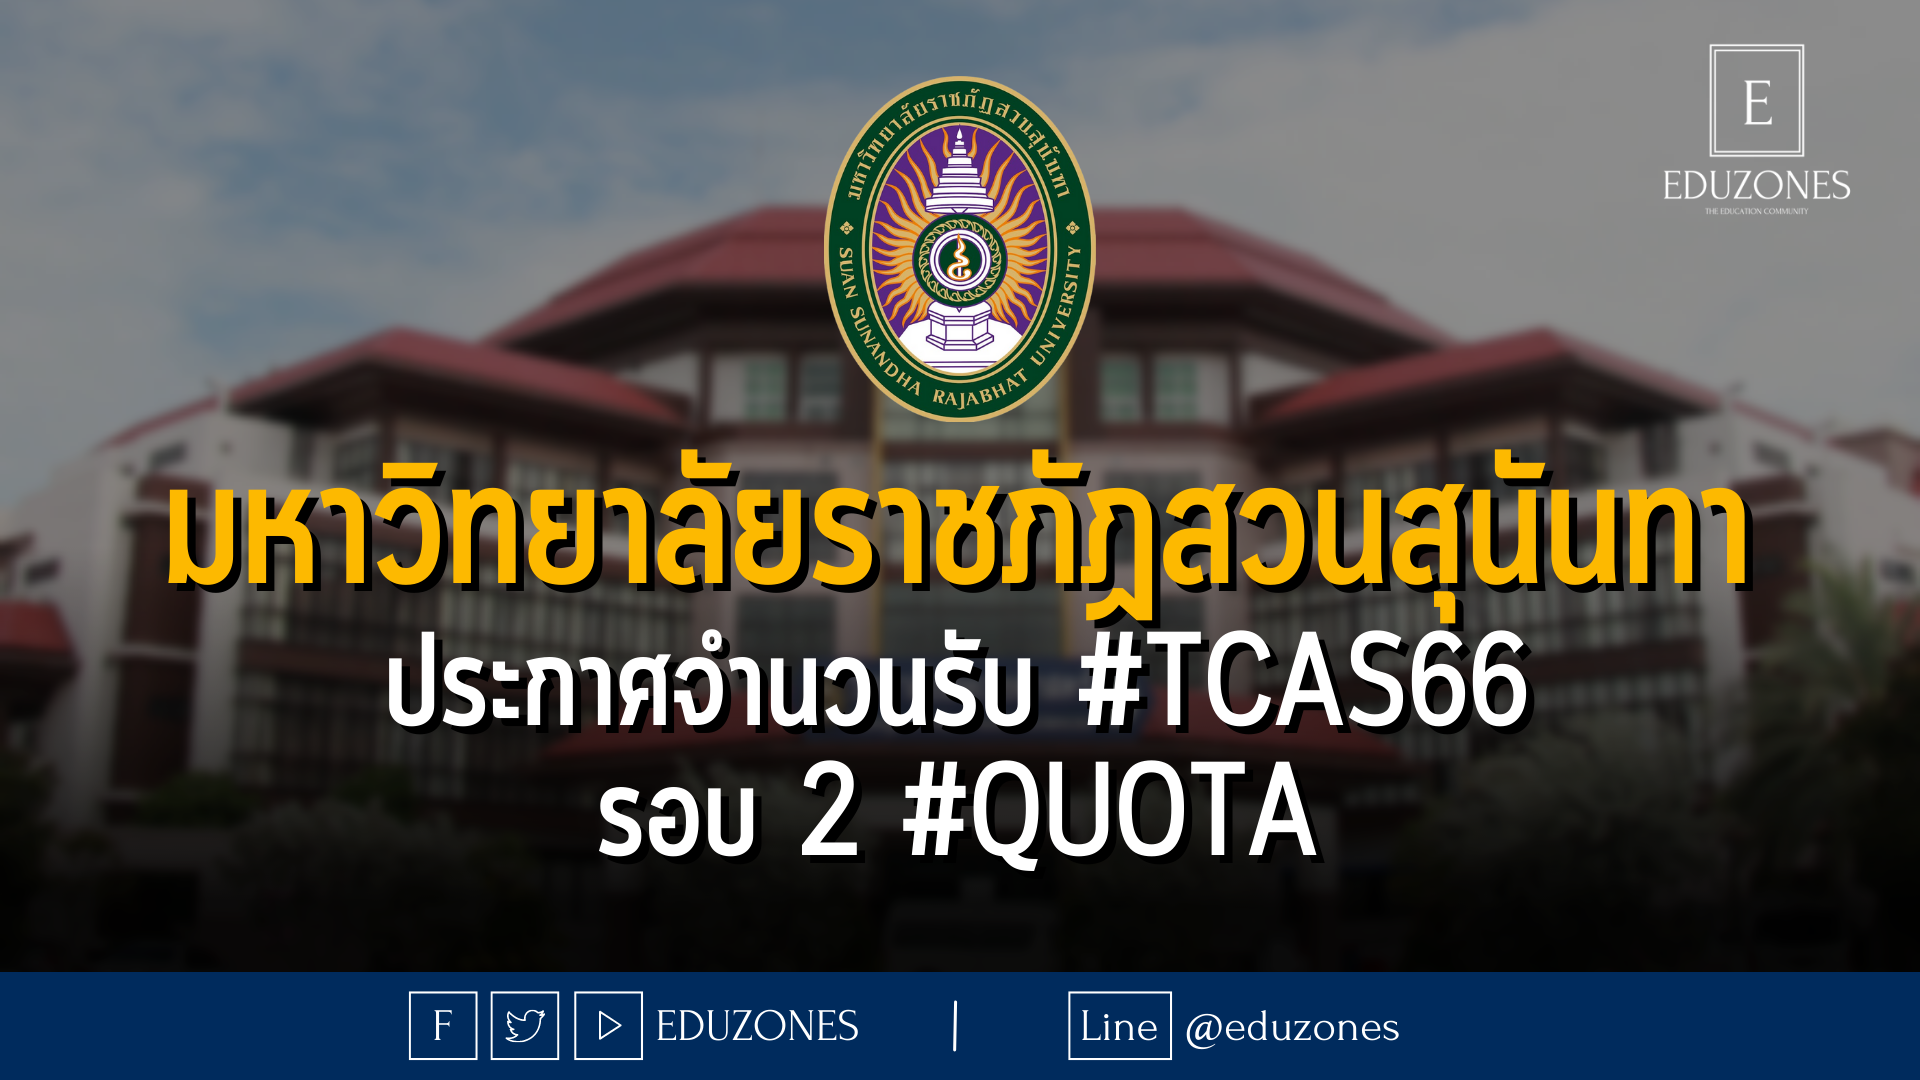 มหาวิทยาลัยราชภัฏสวนสุนันทา ประกาศจำนวนรับ #TCAS66 รอบ 2 #QUOTA